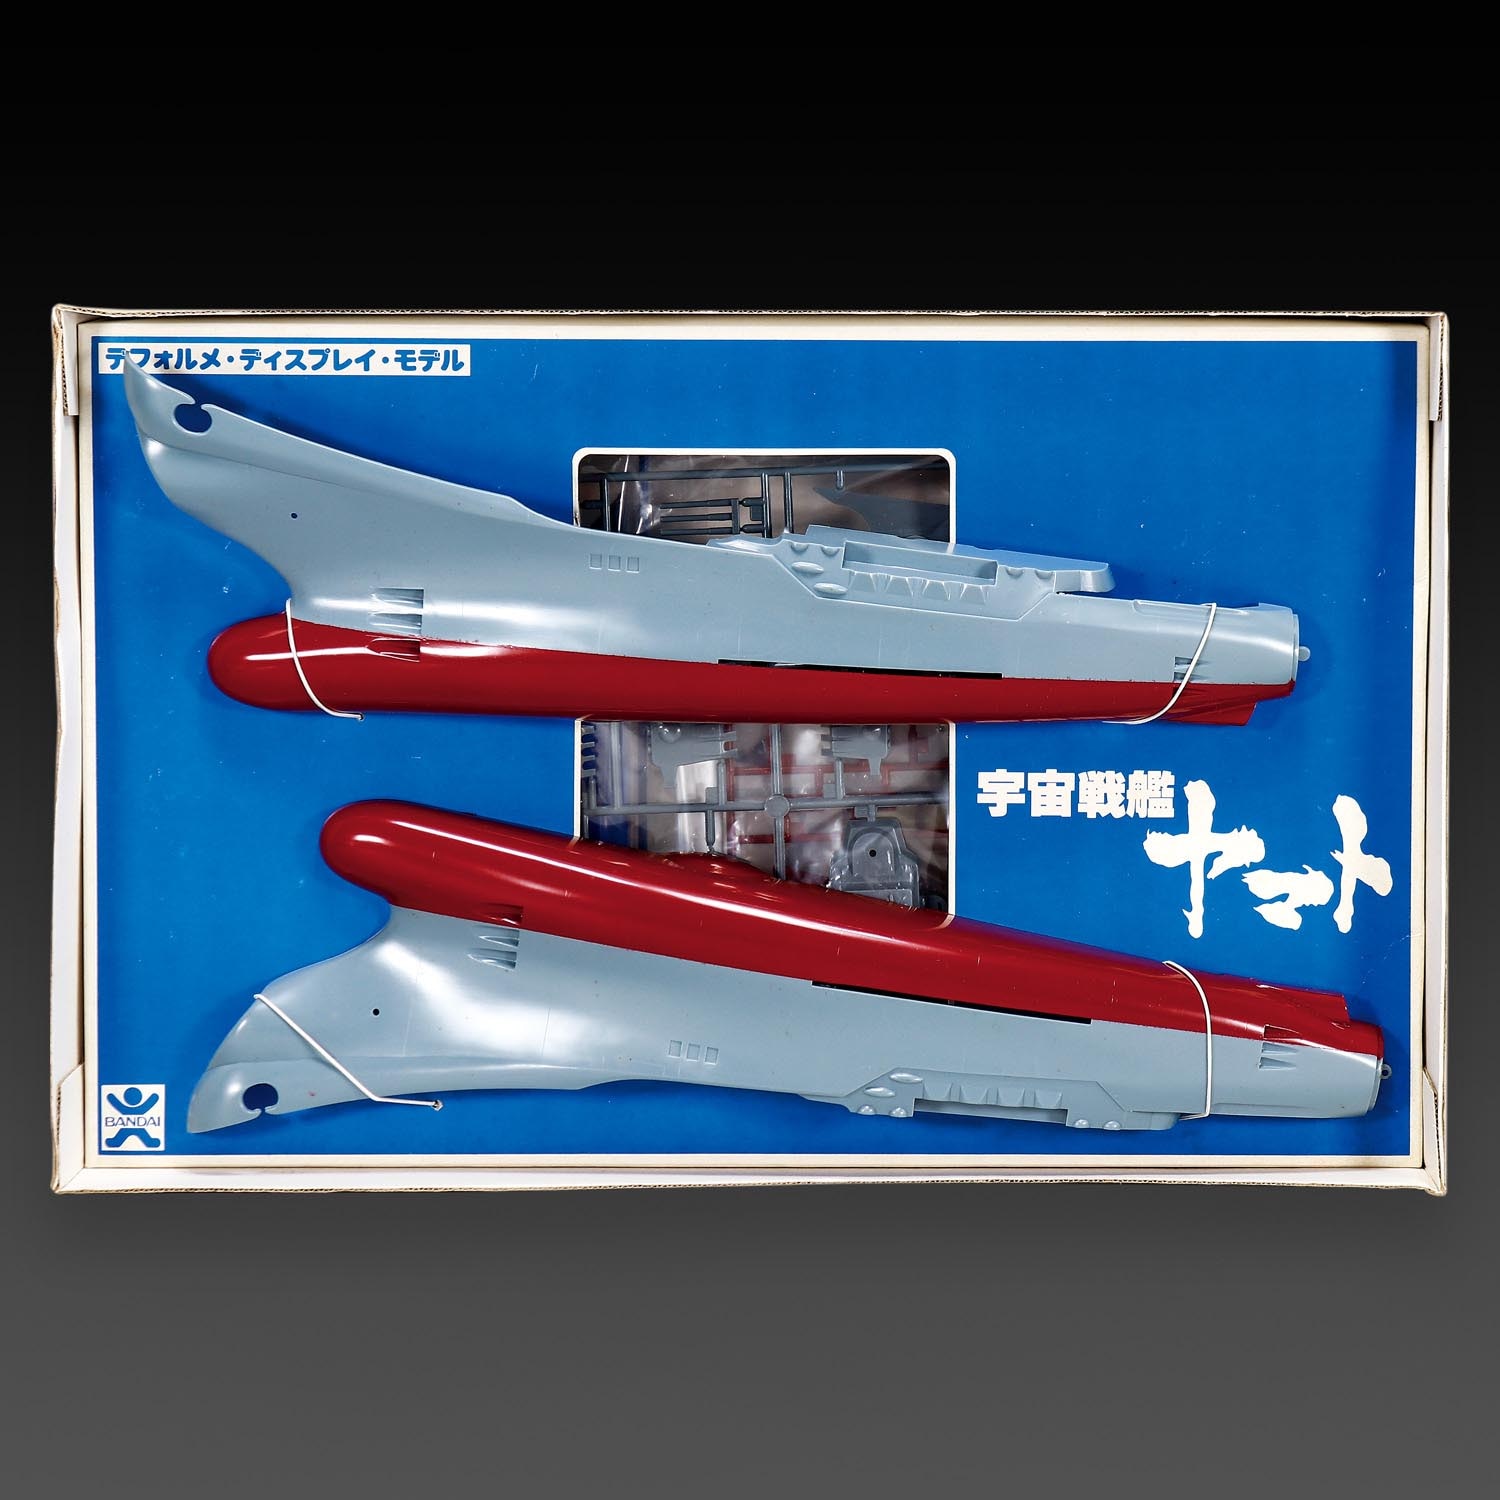 バンダイ 宇宙戦艦ヤマトデフォルメディスプレイモデル